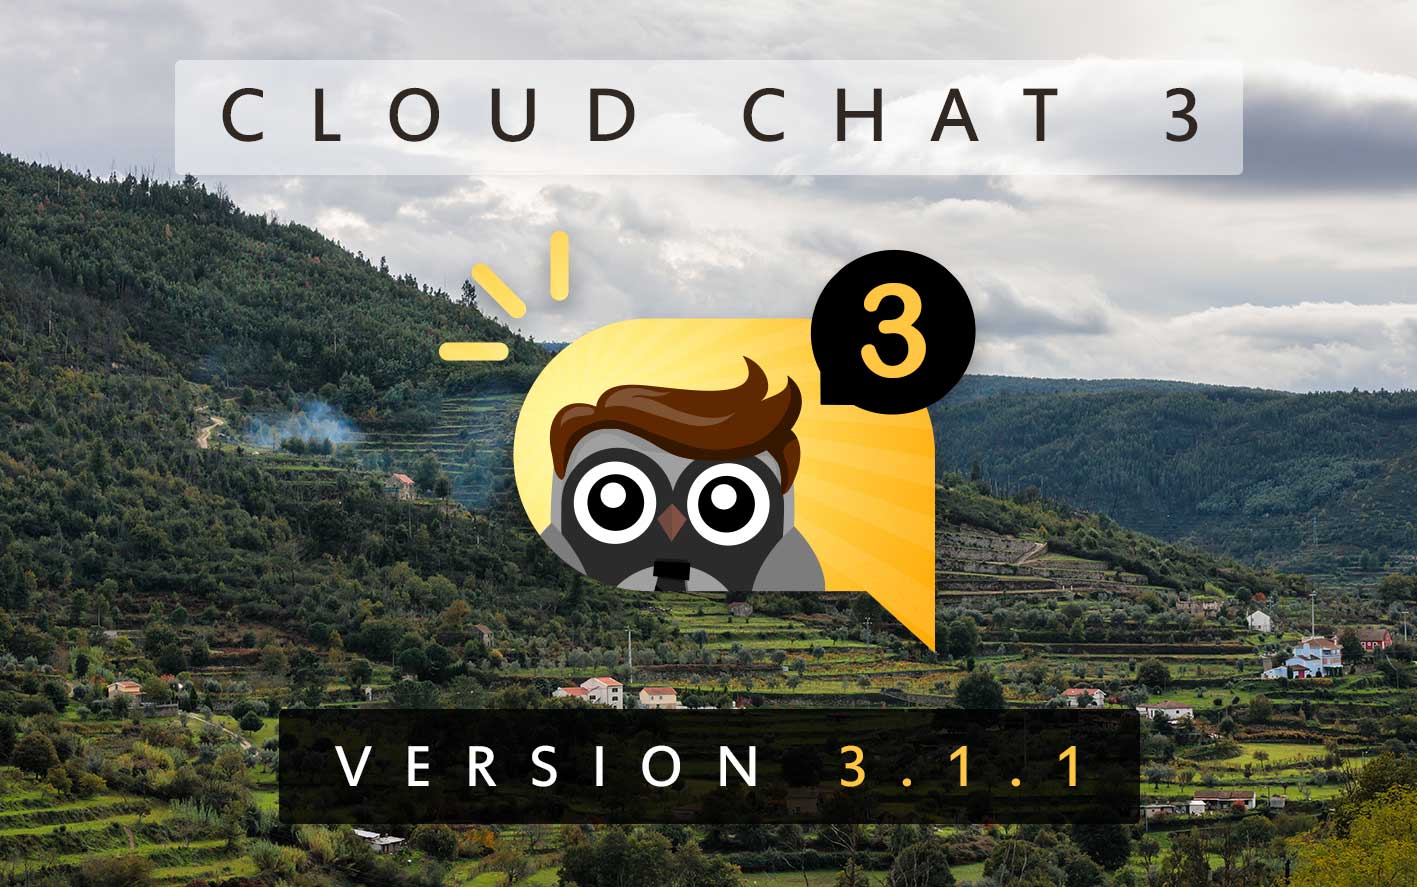 Cloud Chat 3 - Version 3.1.1